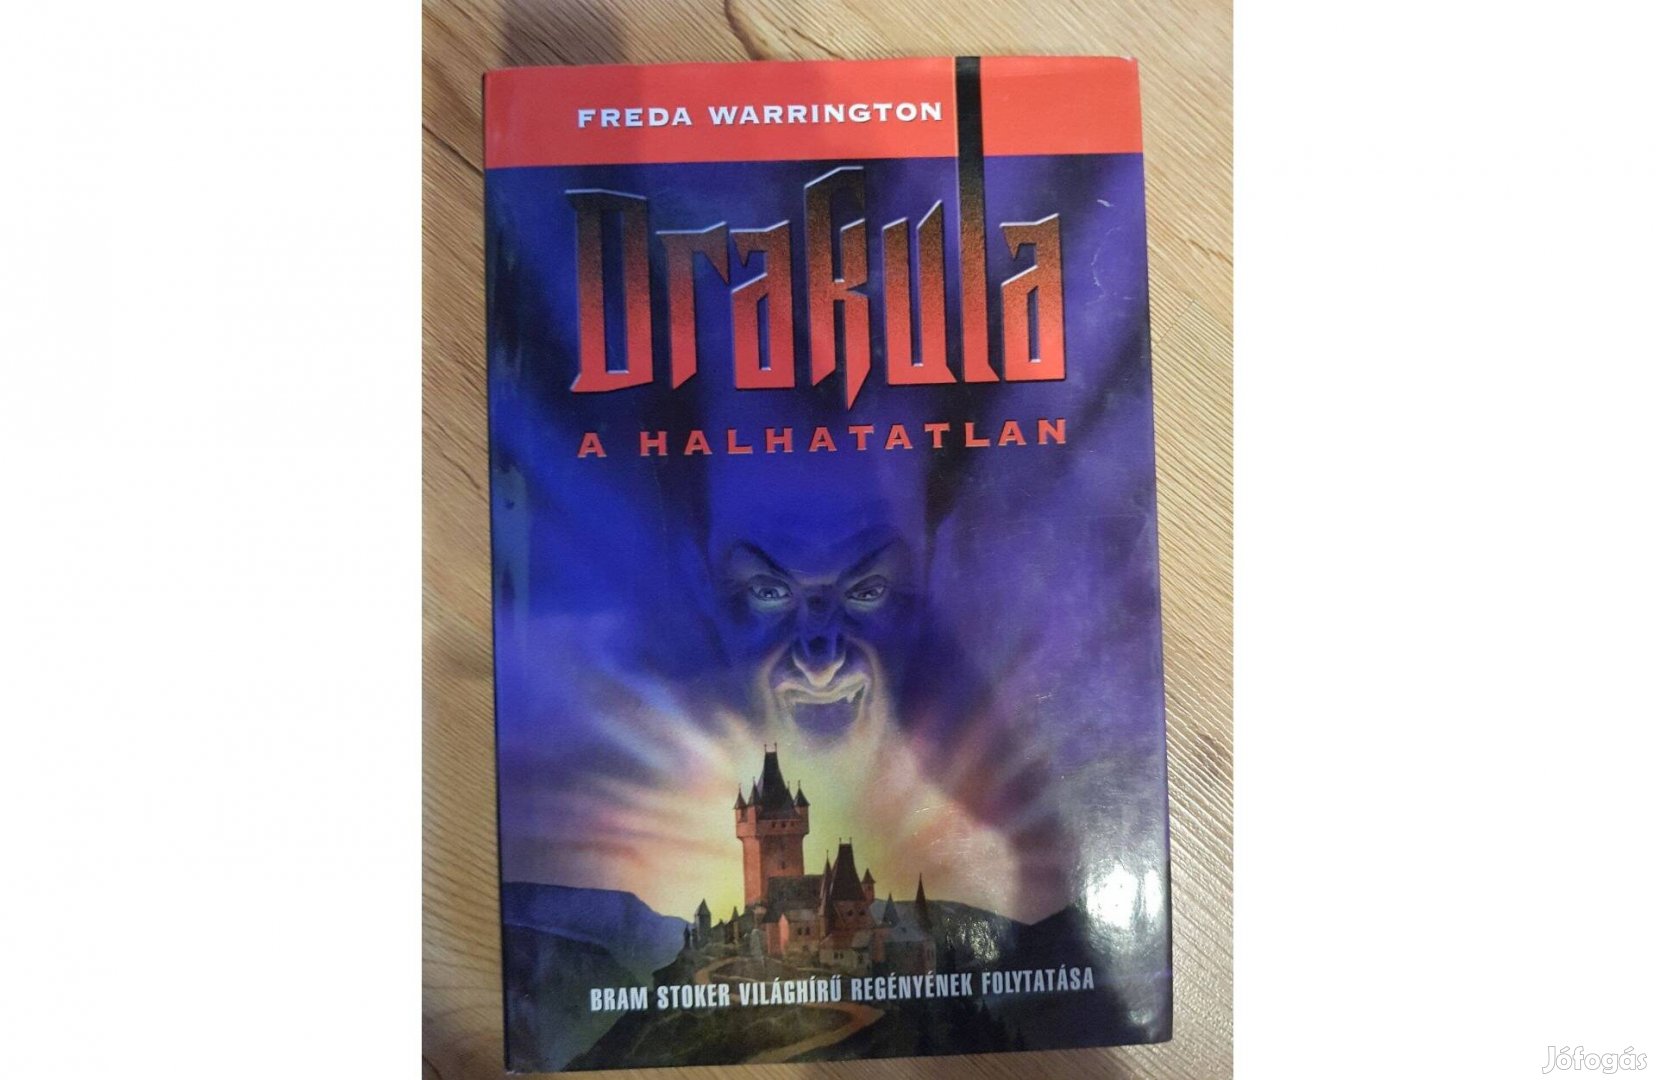 Freda Warrington - Drakula a halhatatlan